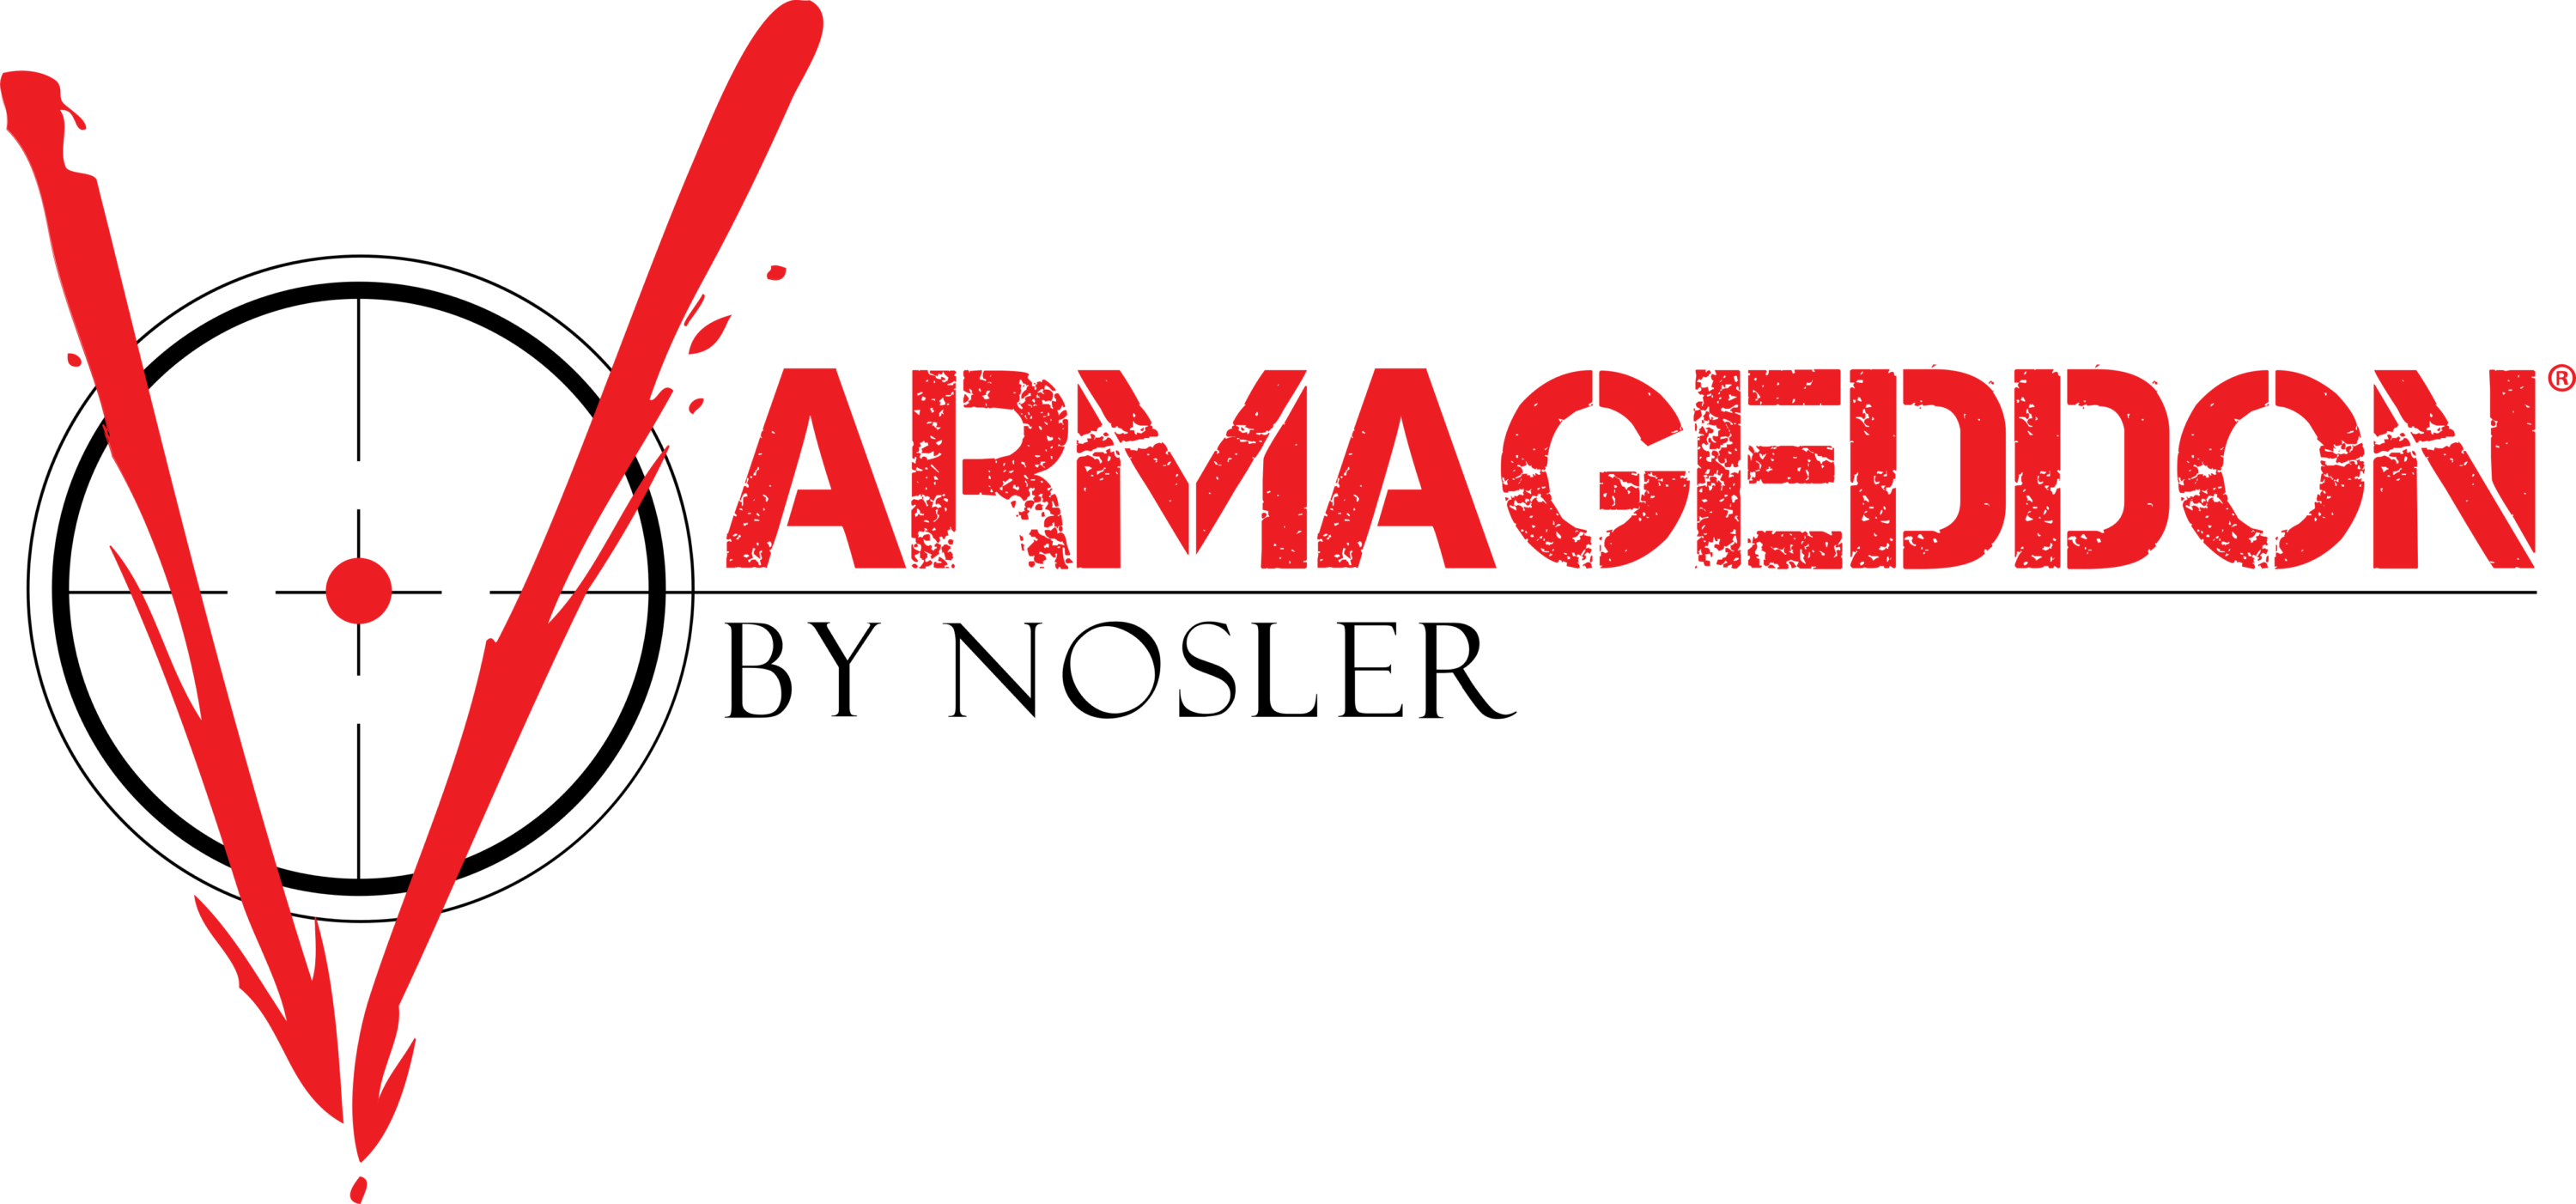 Varmageddon Logo